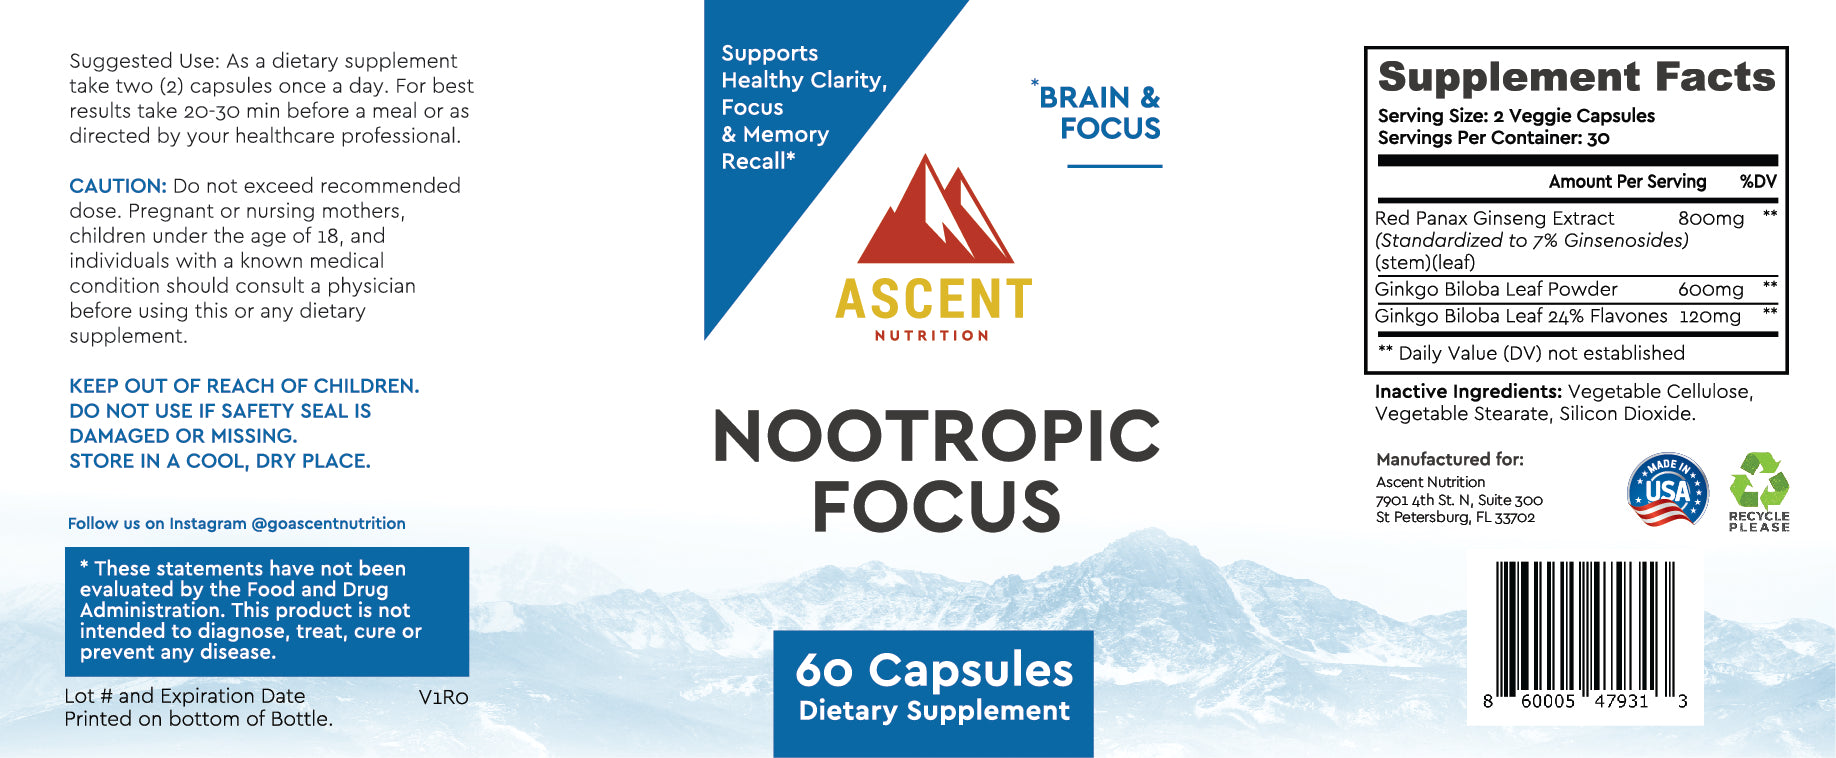 Ascent Nutrition Nootropic Focus Supplement